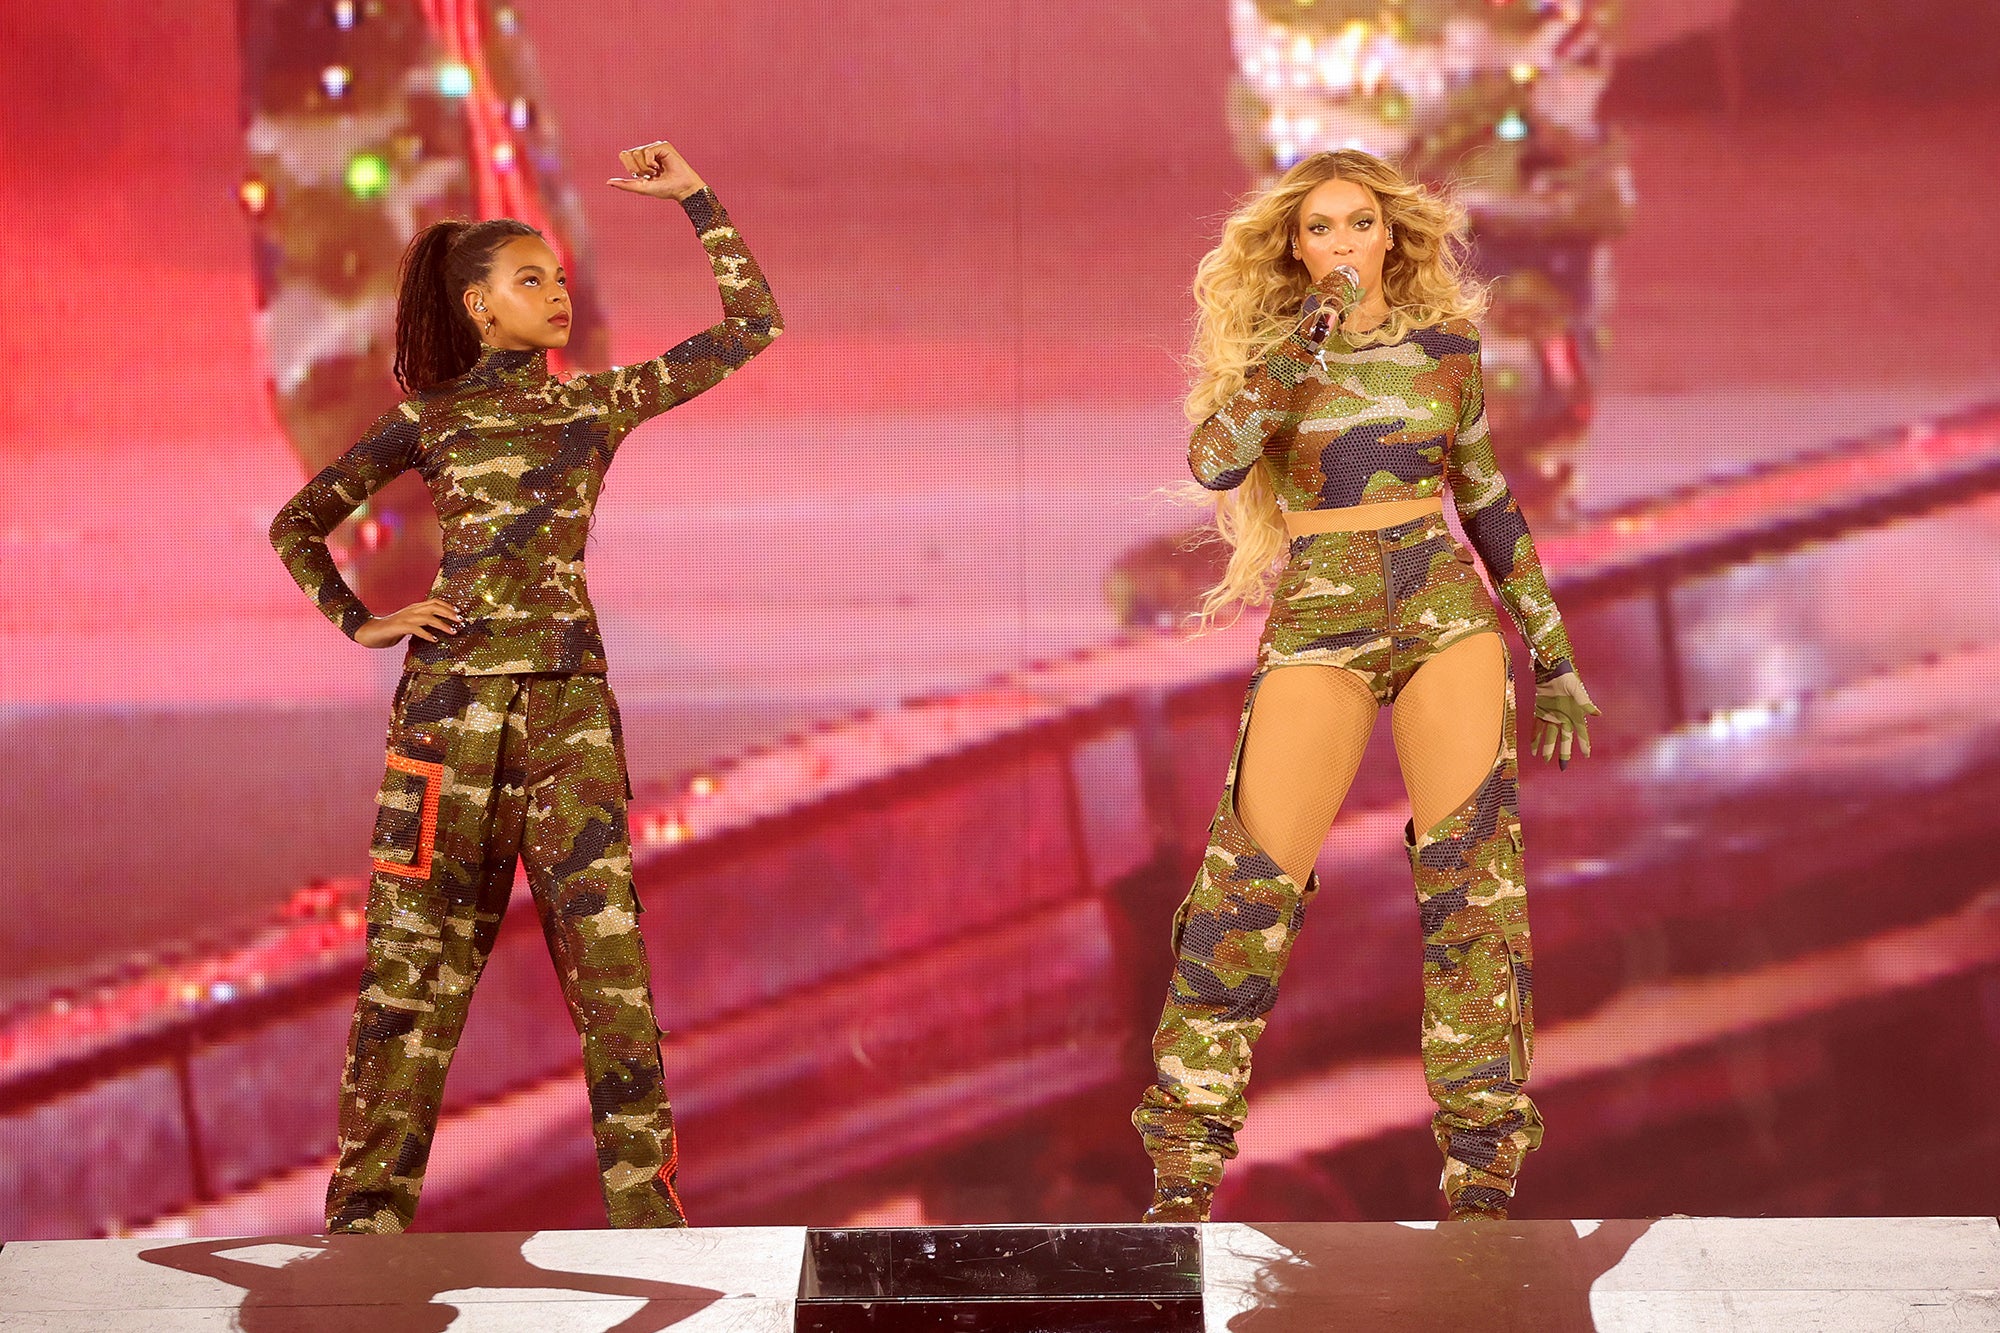 Renaissance' review: A Beyoncé concert film and the sweat behind